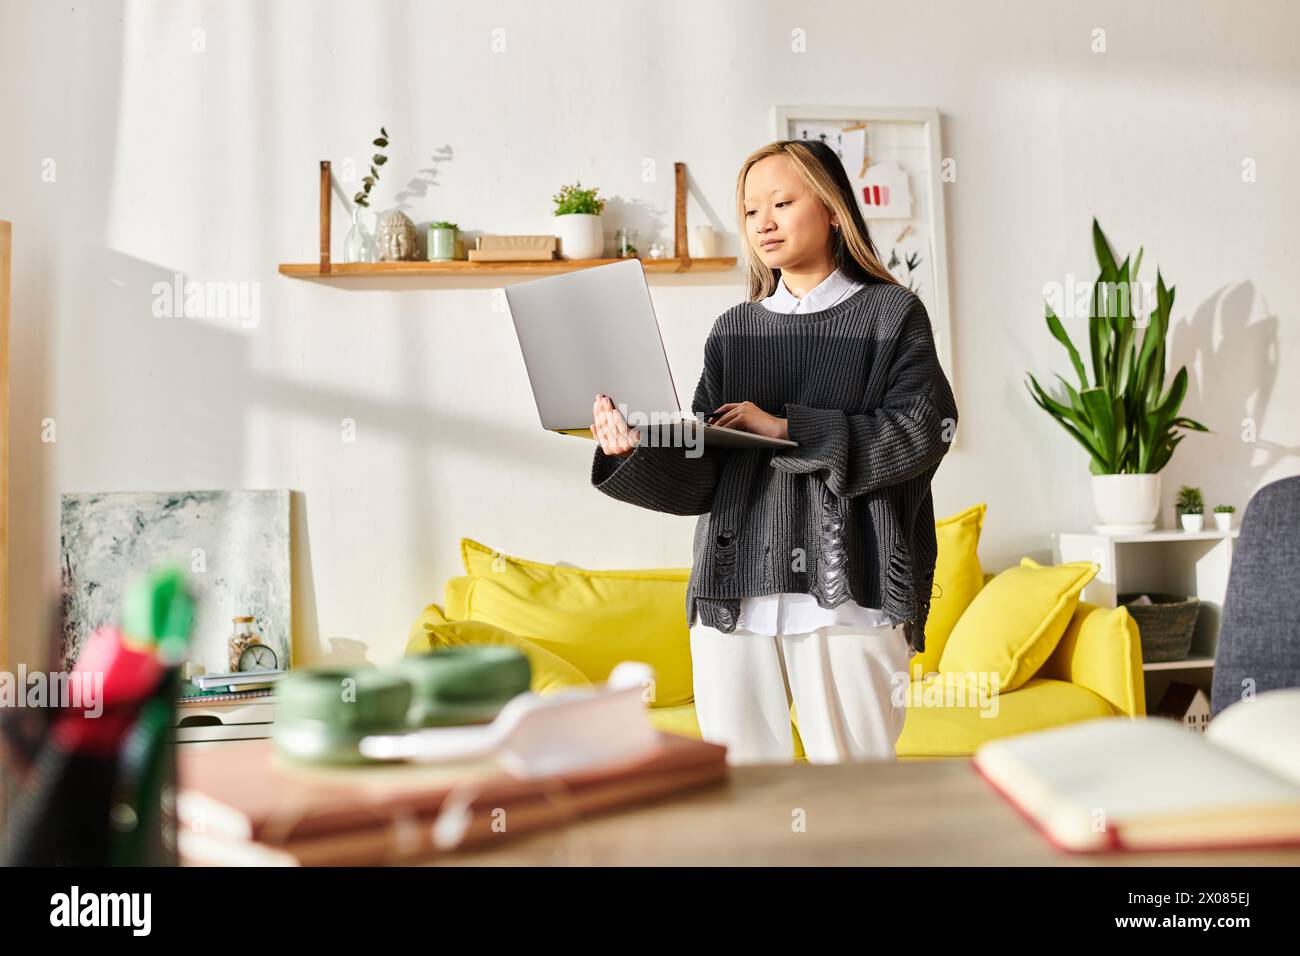 Eine junge asiatische Frau steht elegant in einem modernen Wohnzimmer, vertieft in E-Learning, während sie einen Laptop in der Hand hält. Stockfoto